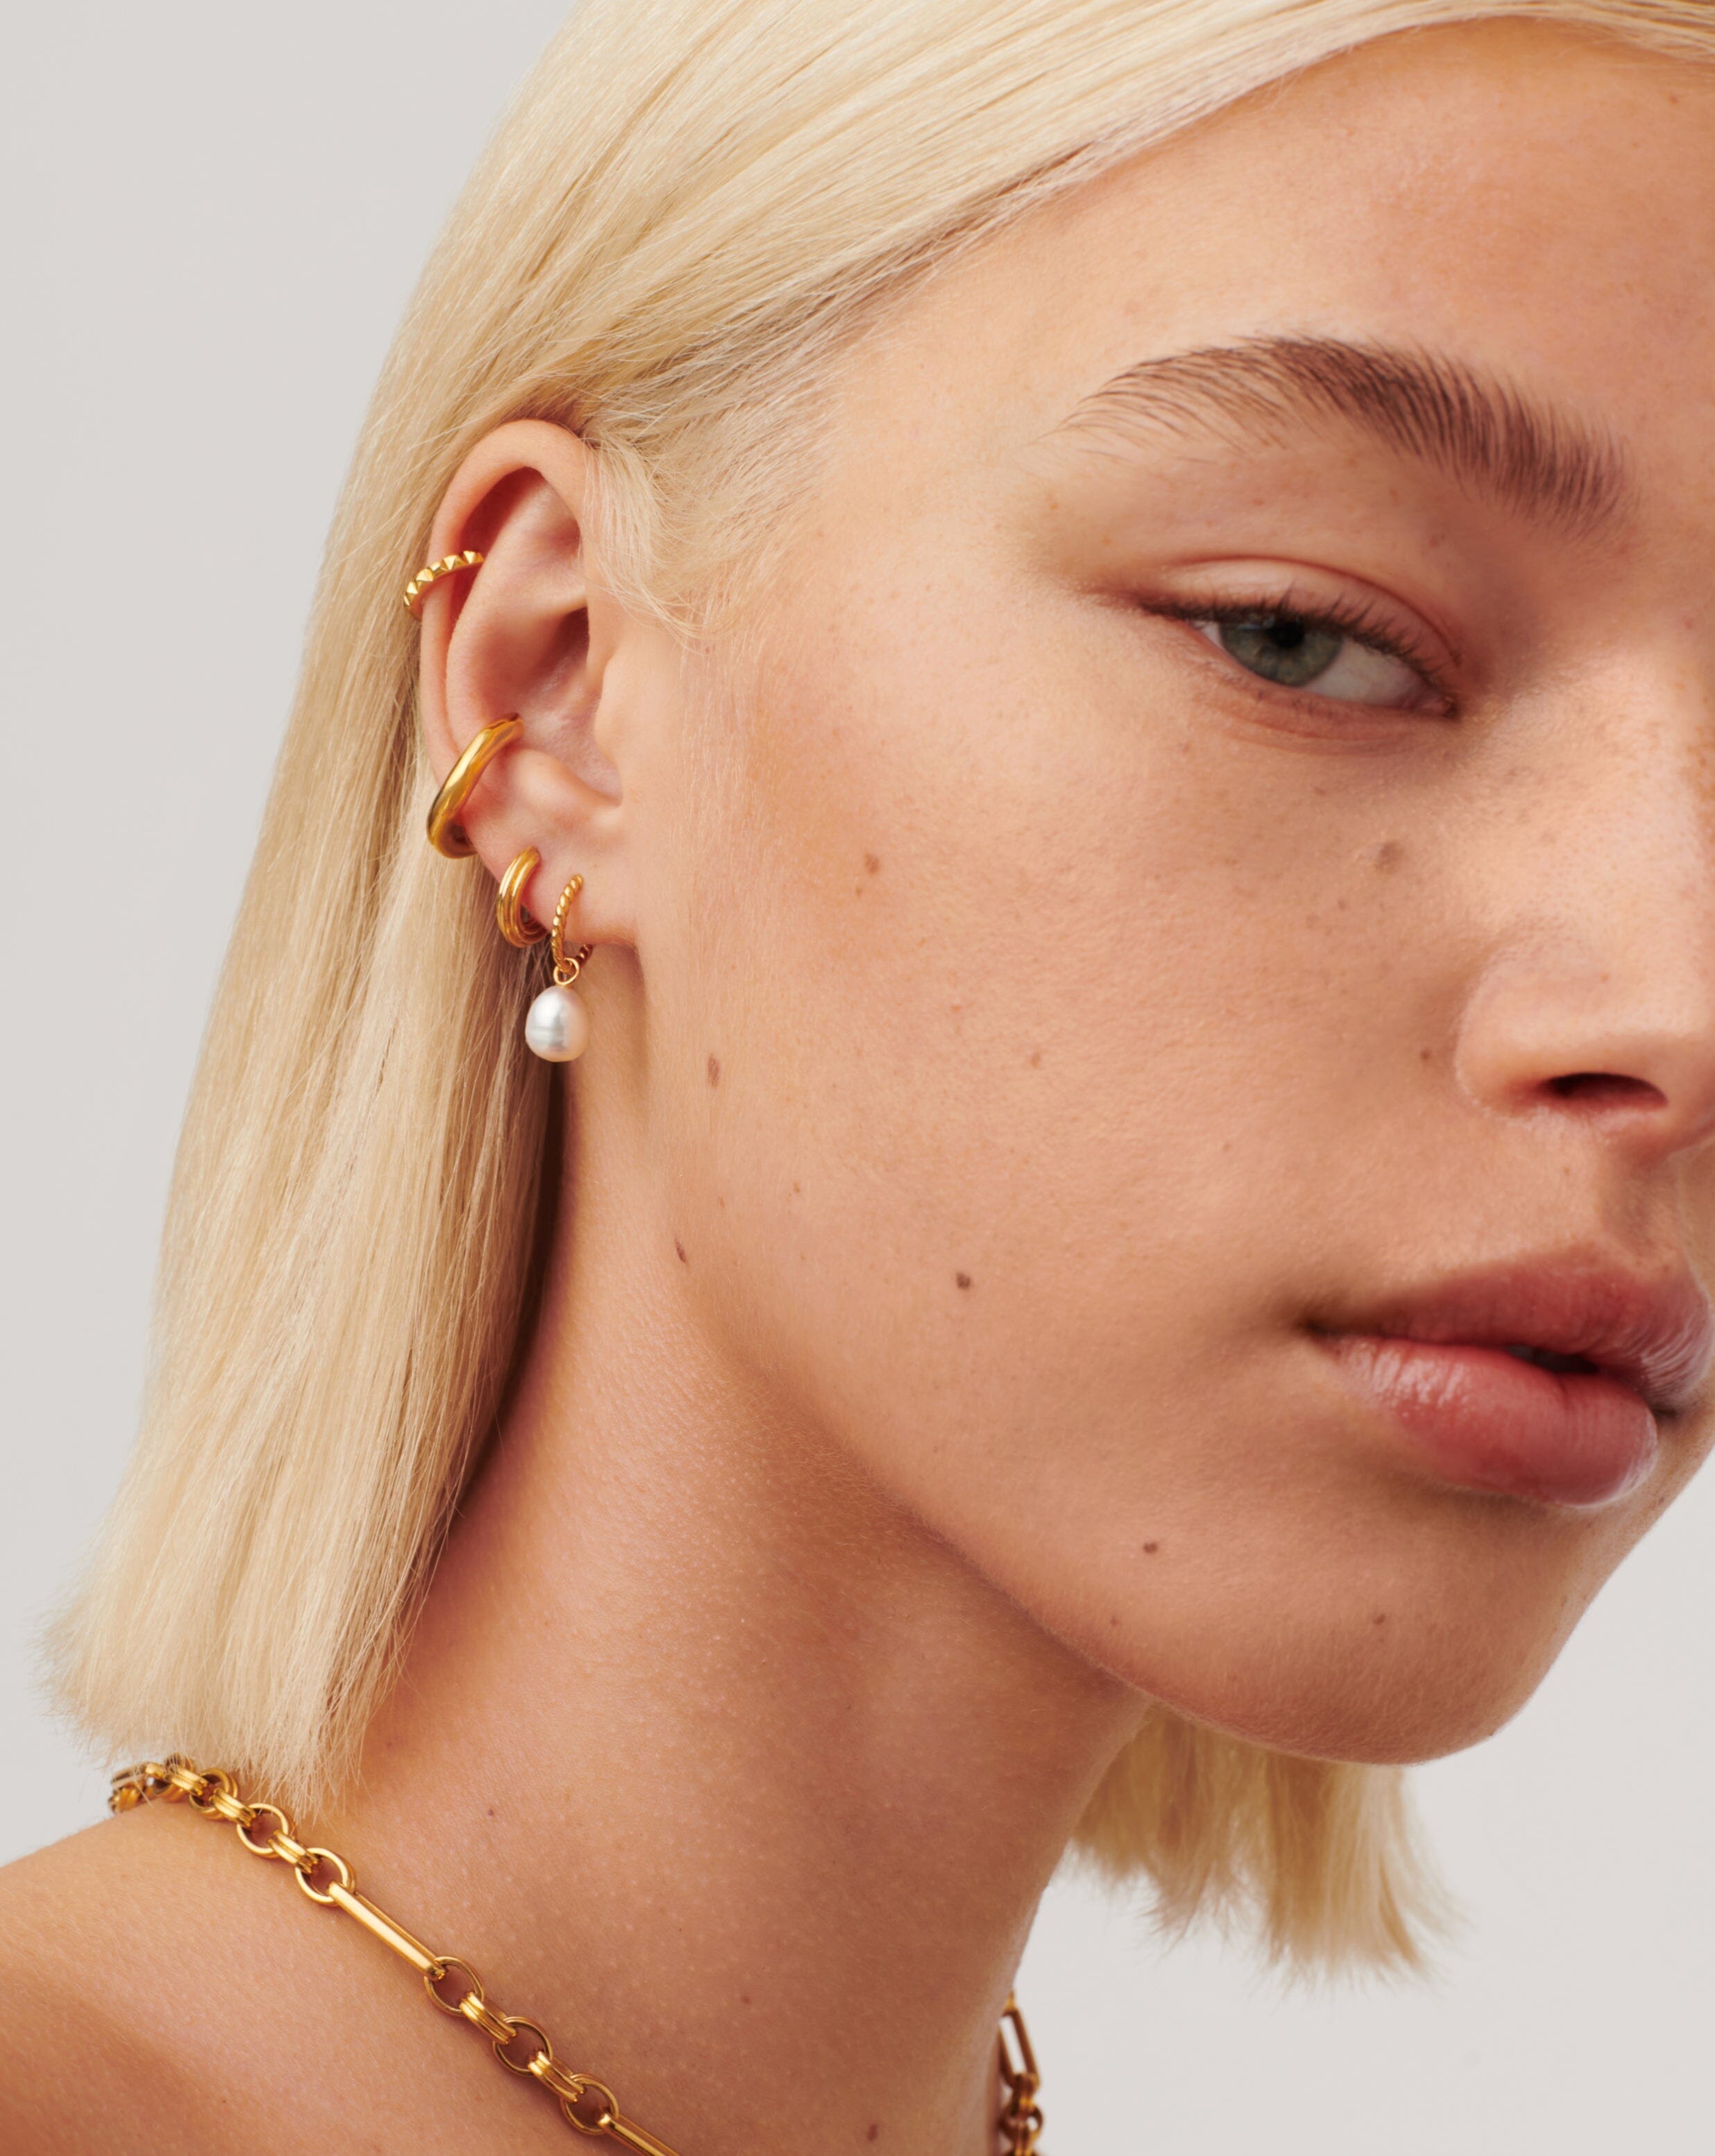 Pearl & Ridge Mini Hoop Earring Set | 18ct Gold Plated Vermeil/Pearl Earrings Missoma 